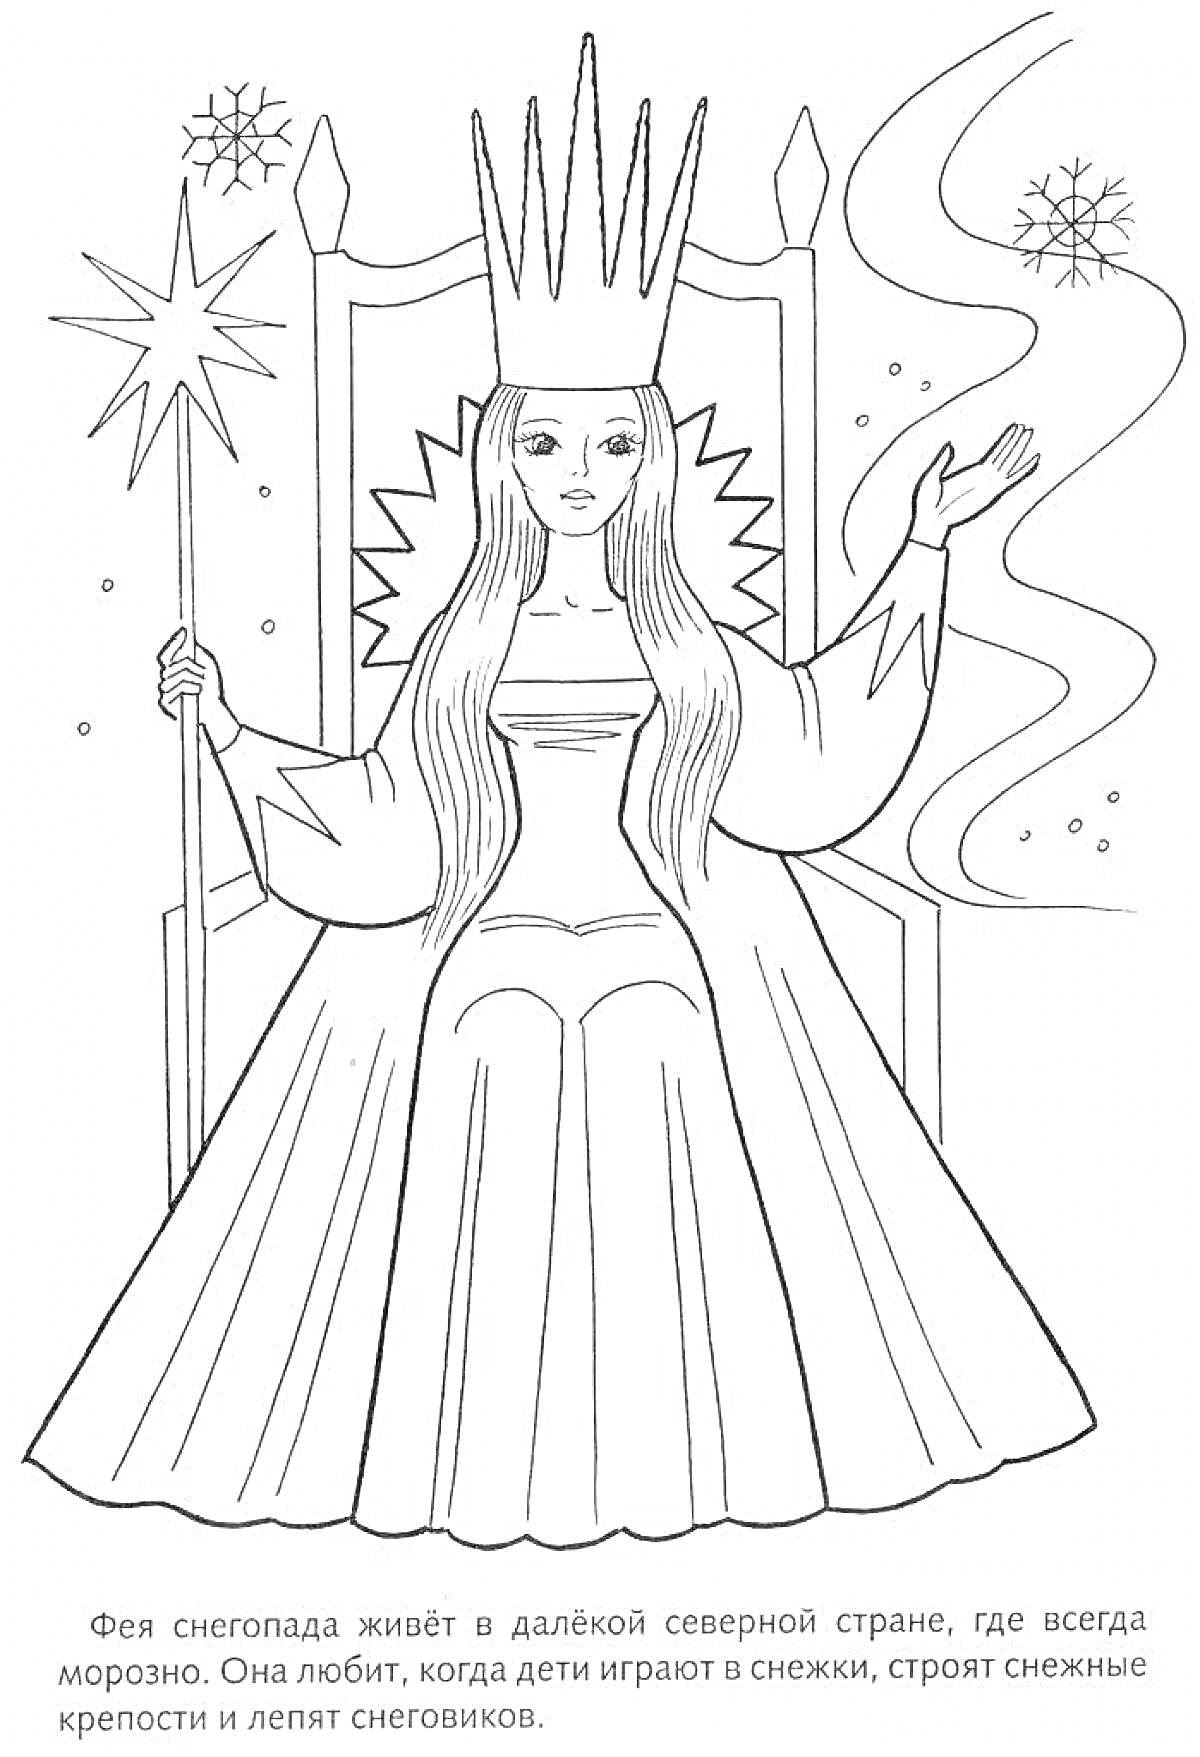 Раскраска Снежная королева на троне с волшебной палочкой в руке, снежинки, звезды и текст о Фее снегопада, живущей в северной стране.